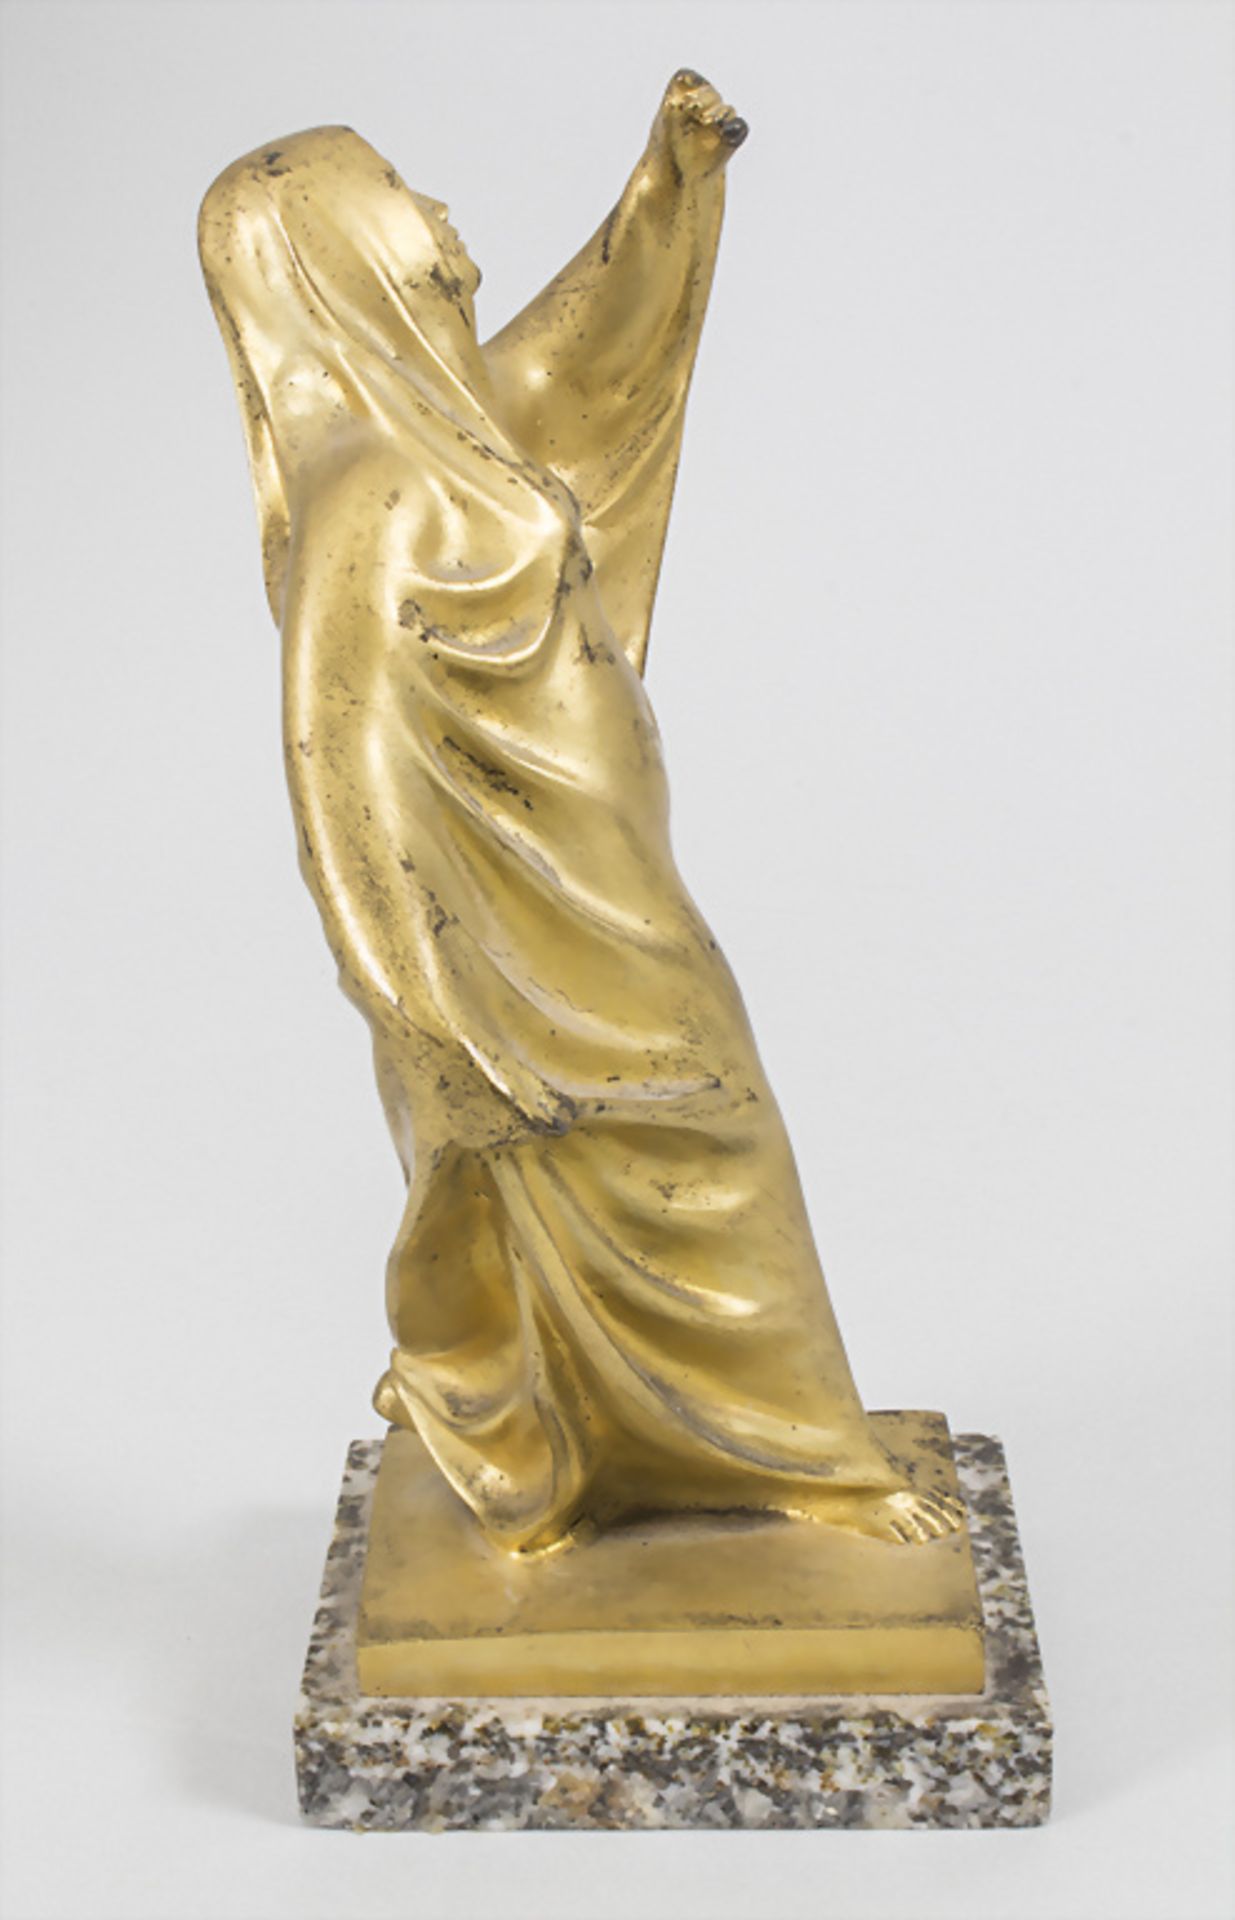 Jugendstil Bronze 'Tanagra Skulptur' / Tanagra sculpture en bronze à patine dorée / An Art ... - Image 4 of 7